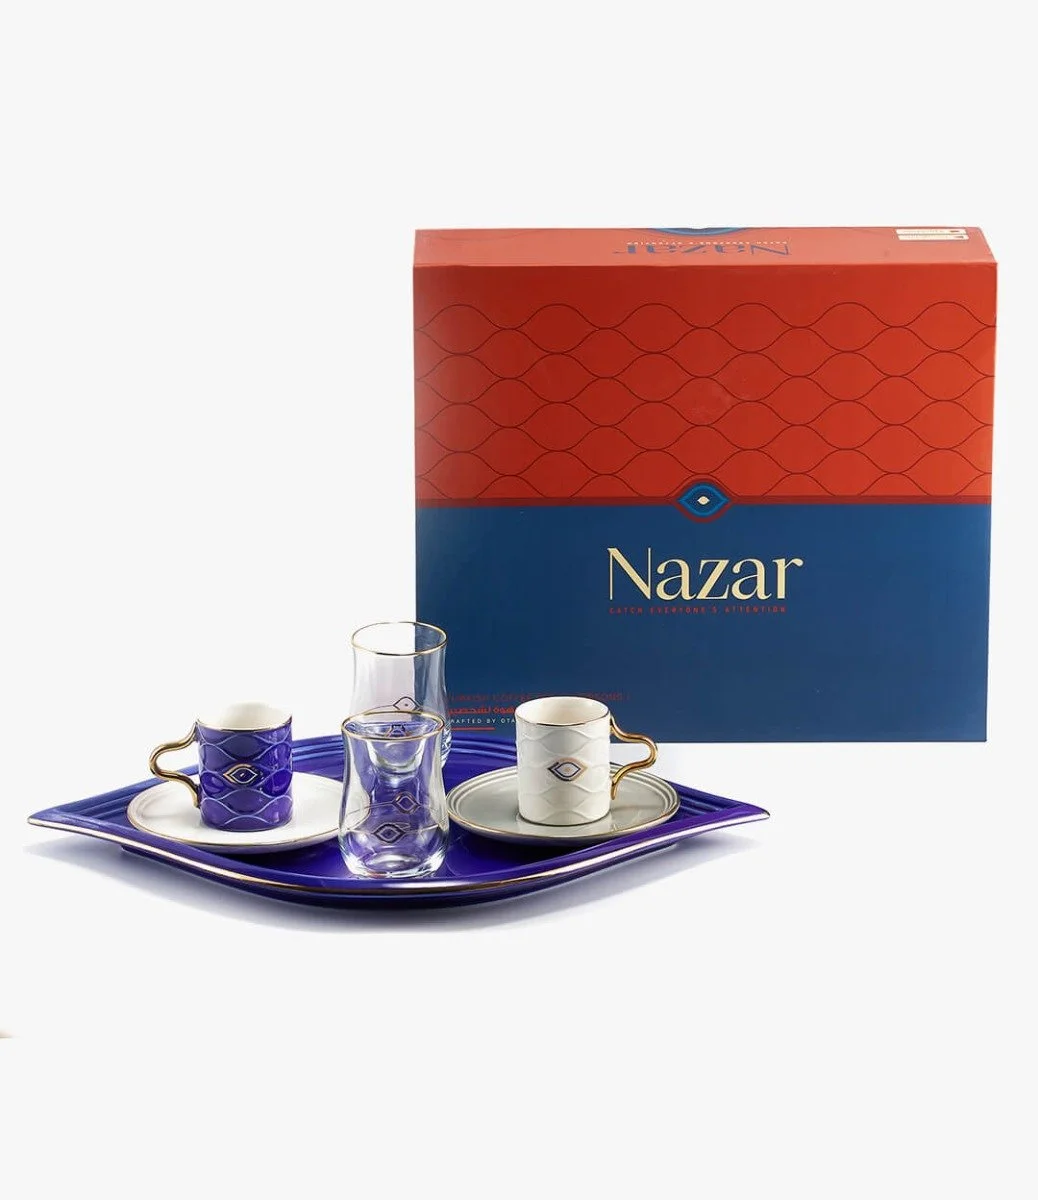 طقم قهوة تركي - نزار -  ازرق غامق وابيض